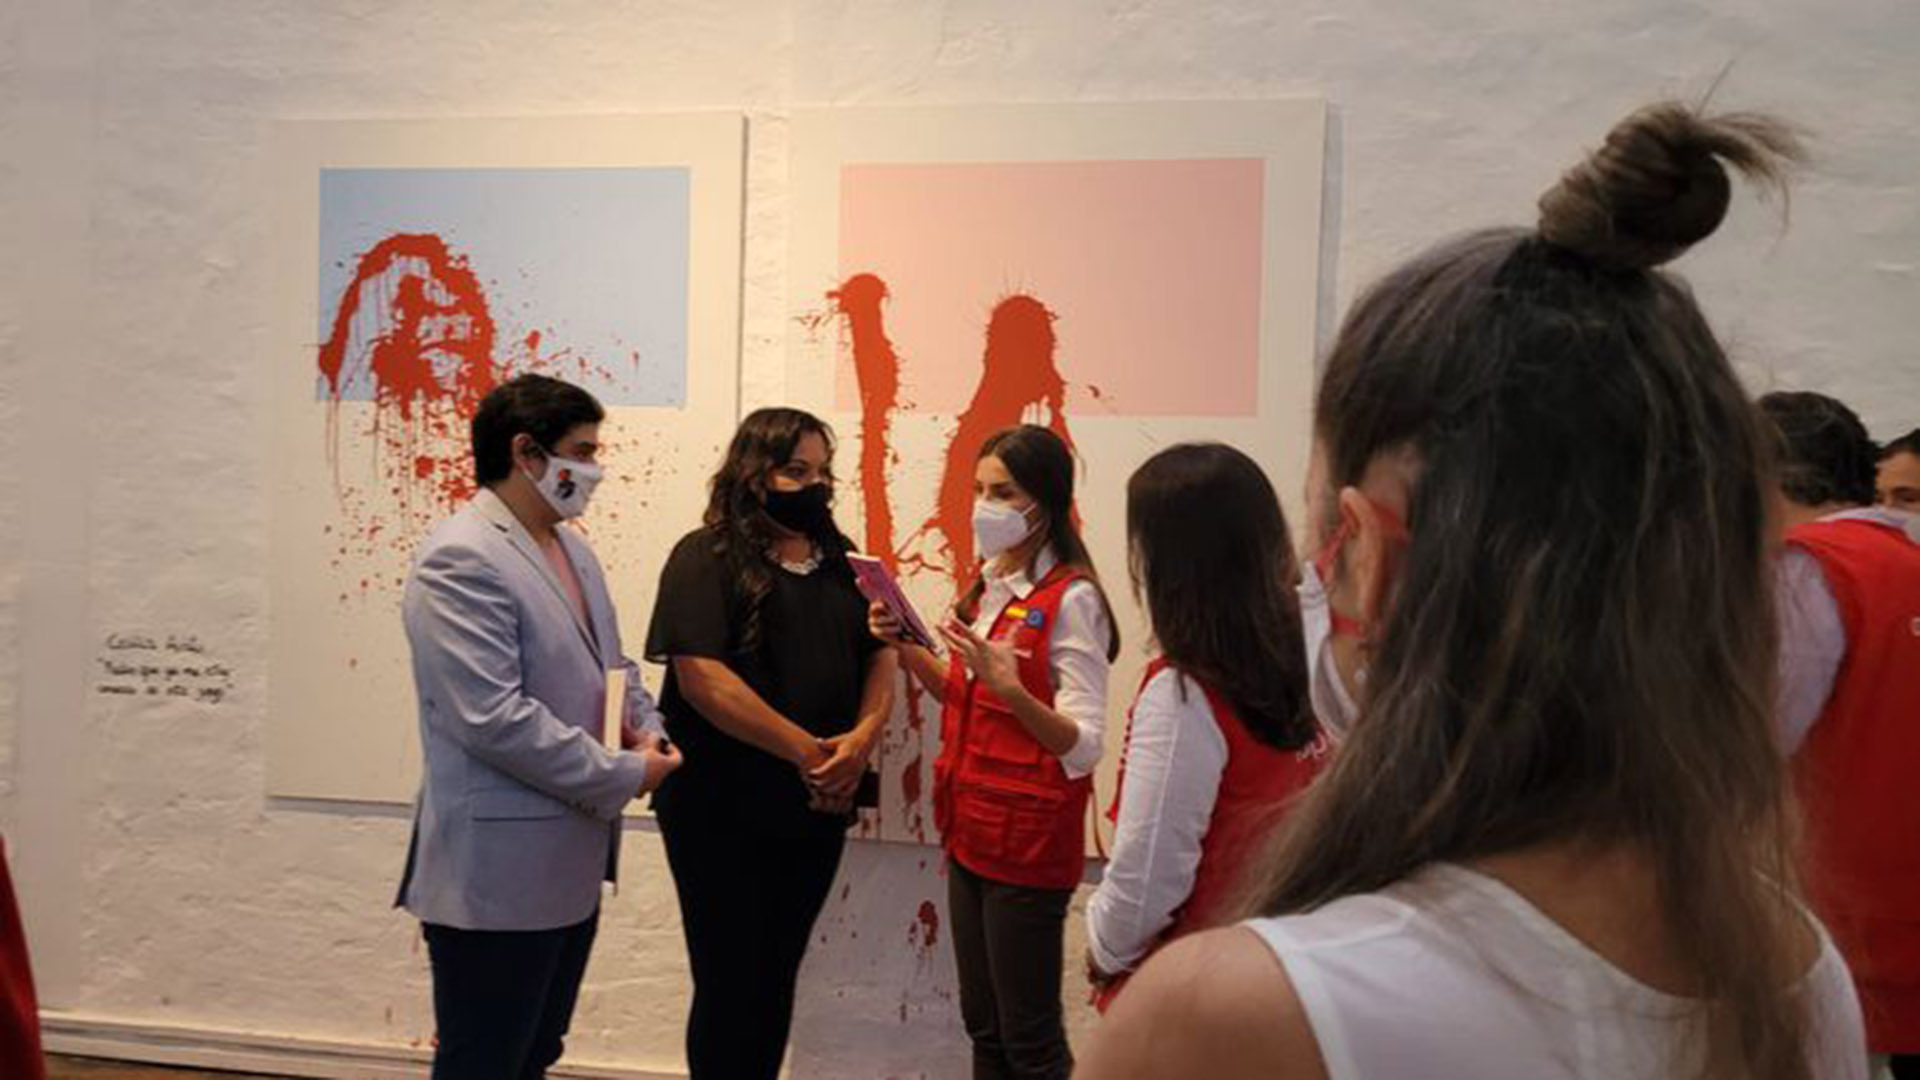 La reina Letizia recorrió el Centro Cultural de España Juan de Zalazar y la muestra de BIENALSUR, “Devenir cuerpx”  La obra que se ve es de la artista plástica Cecilia Avati (Gentileza Bienalsur)
